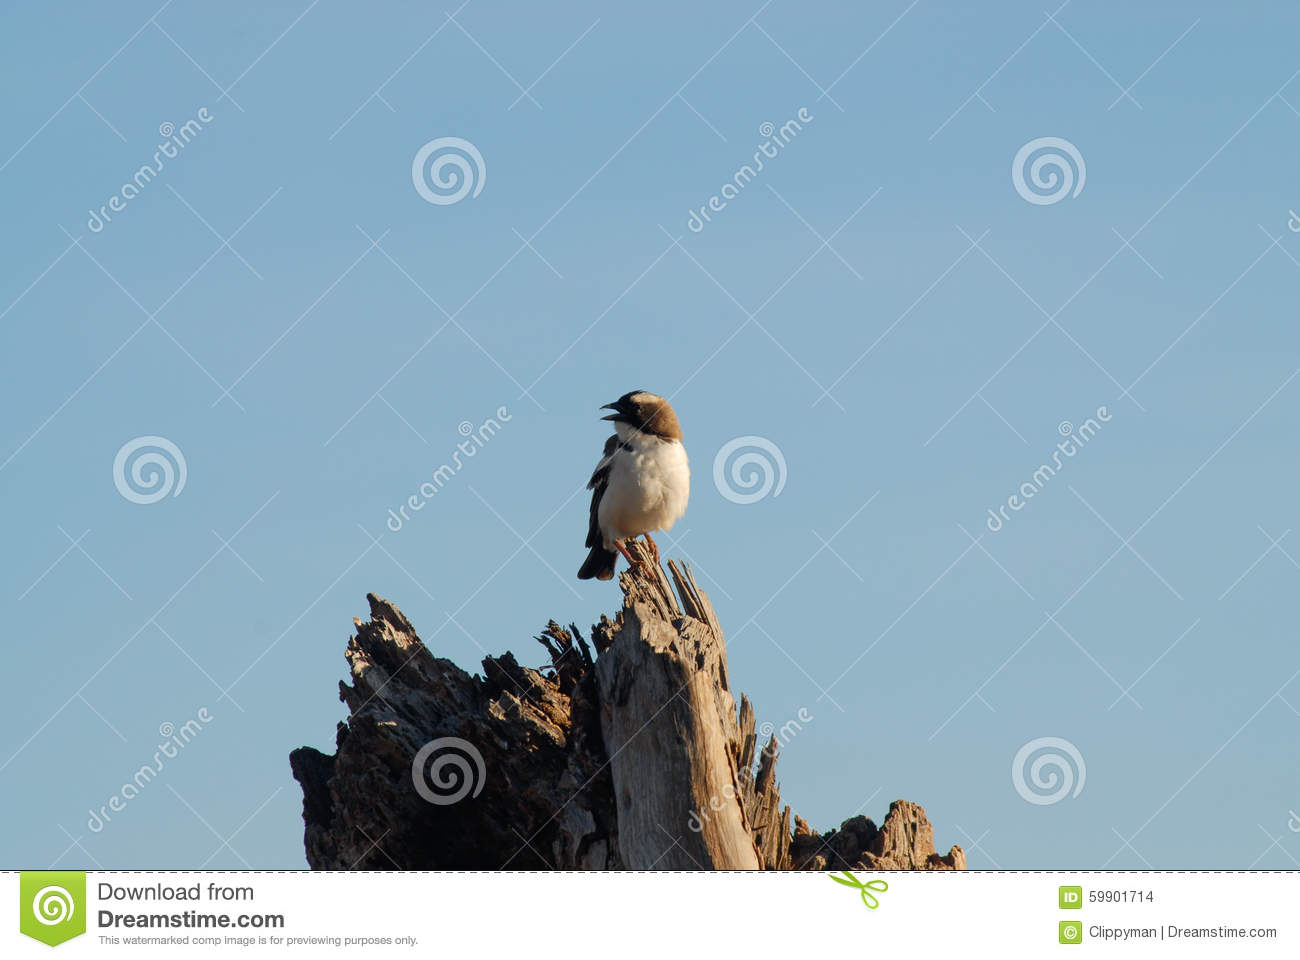     Weaver  Perched On Dead Tree Stump  Beak Open  Blue Sky Background